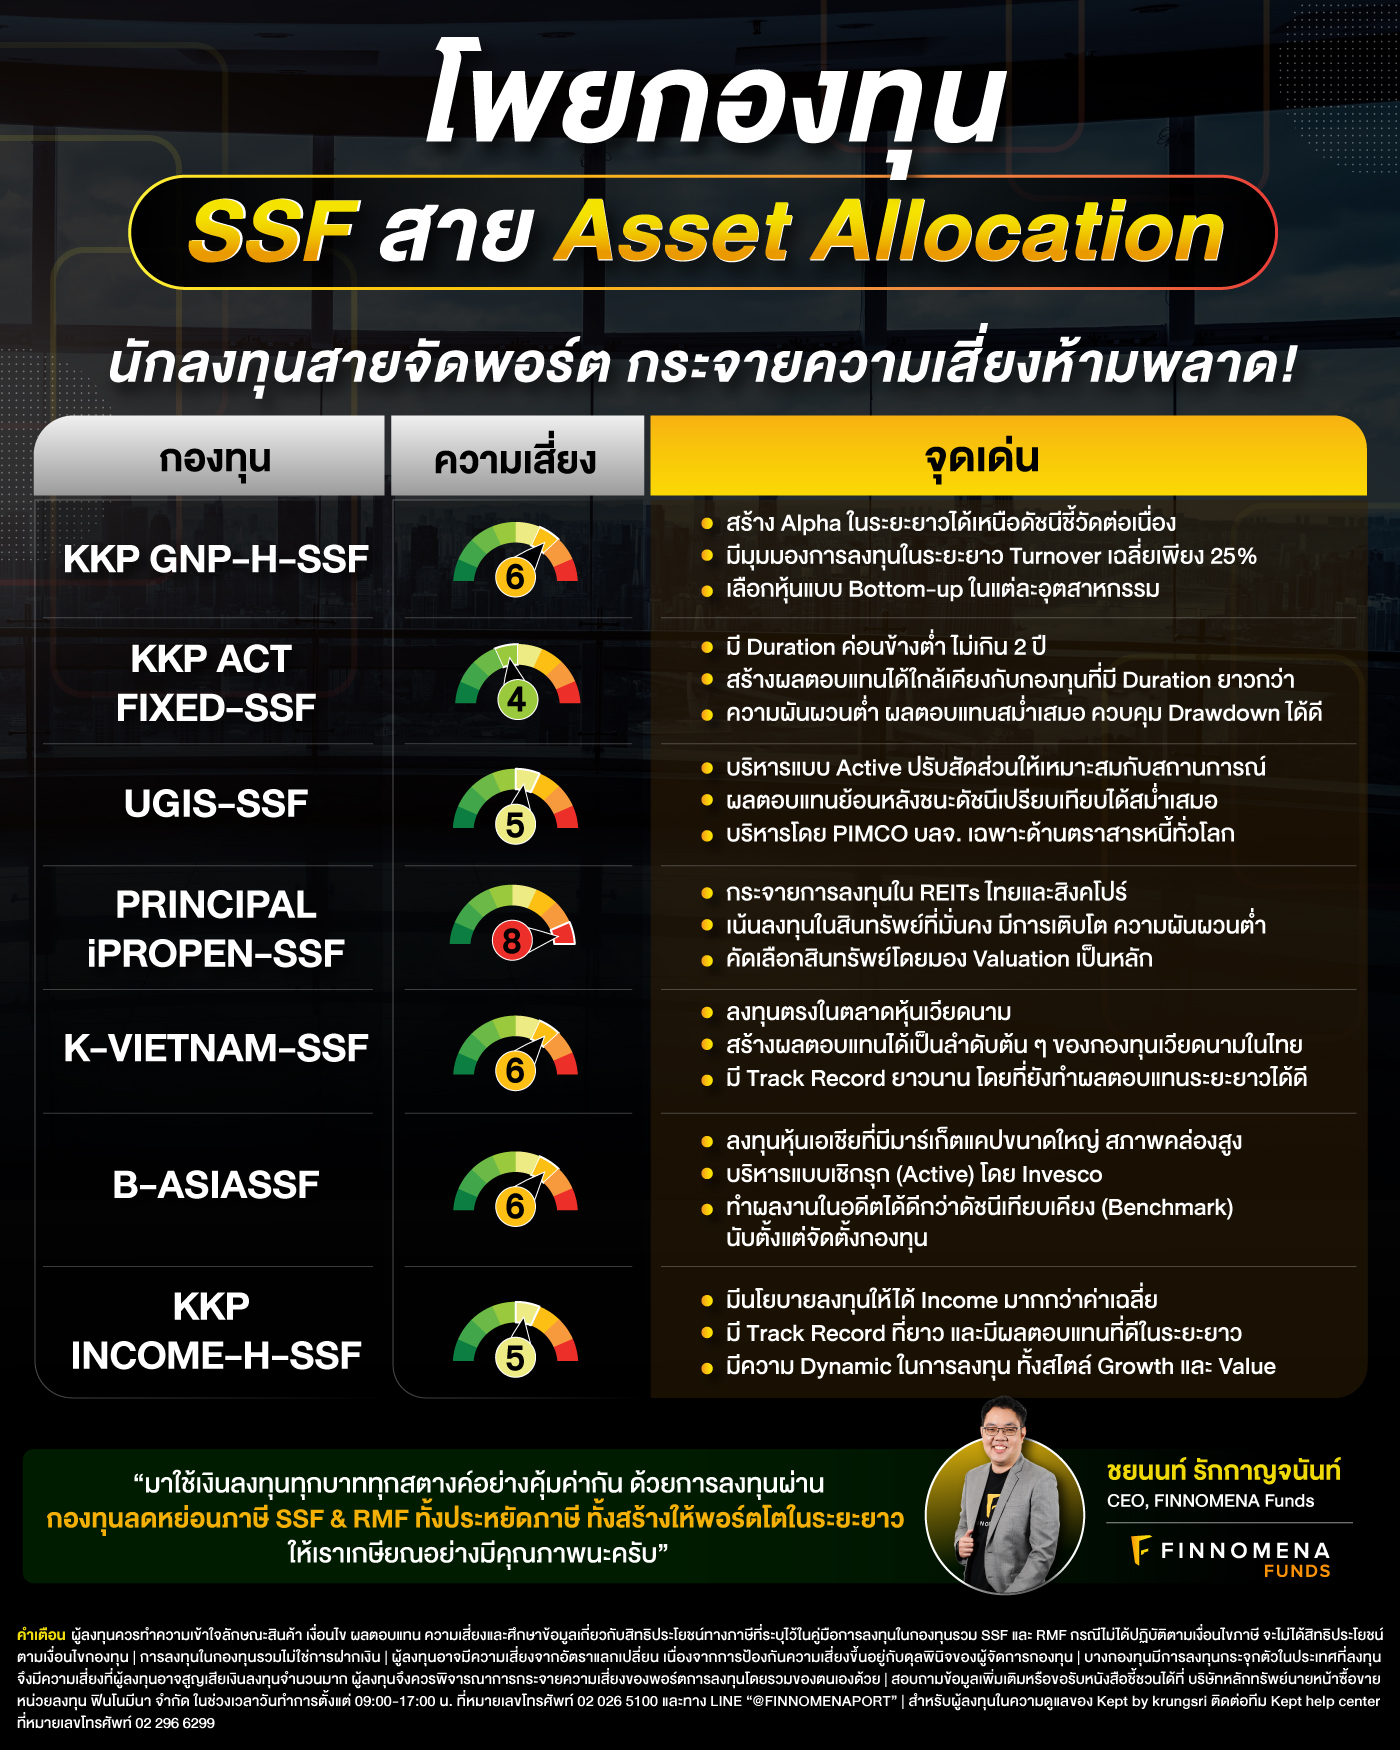 โพยกองทุน SSF & RMF สาย Asset Allocation: นักลงทุนสายจัดพอร์ต กระจายความเสี่ยงห้ามพลาด!